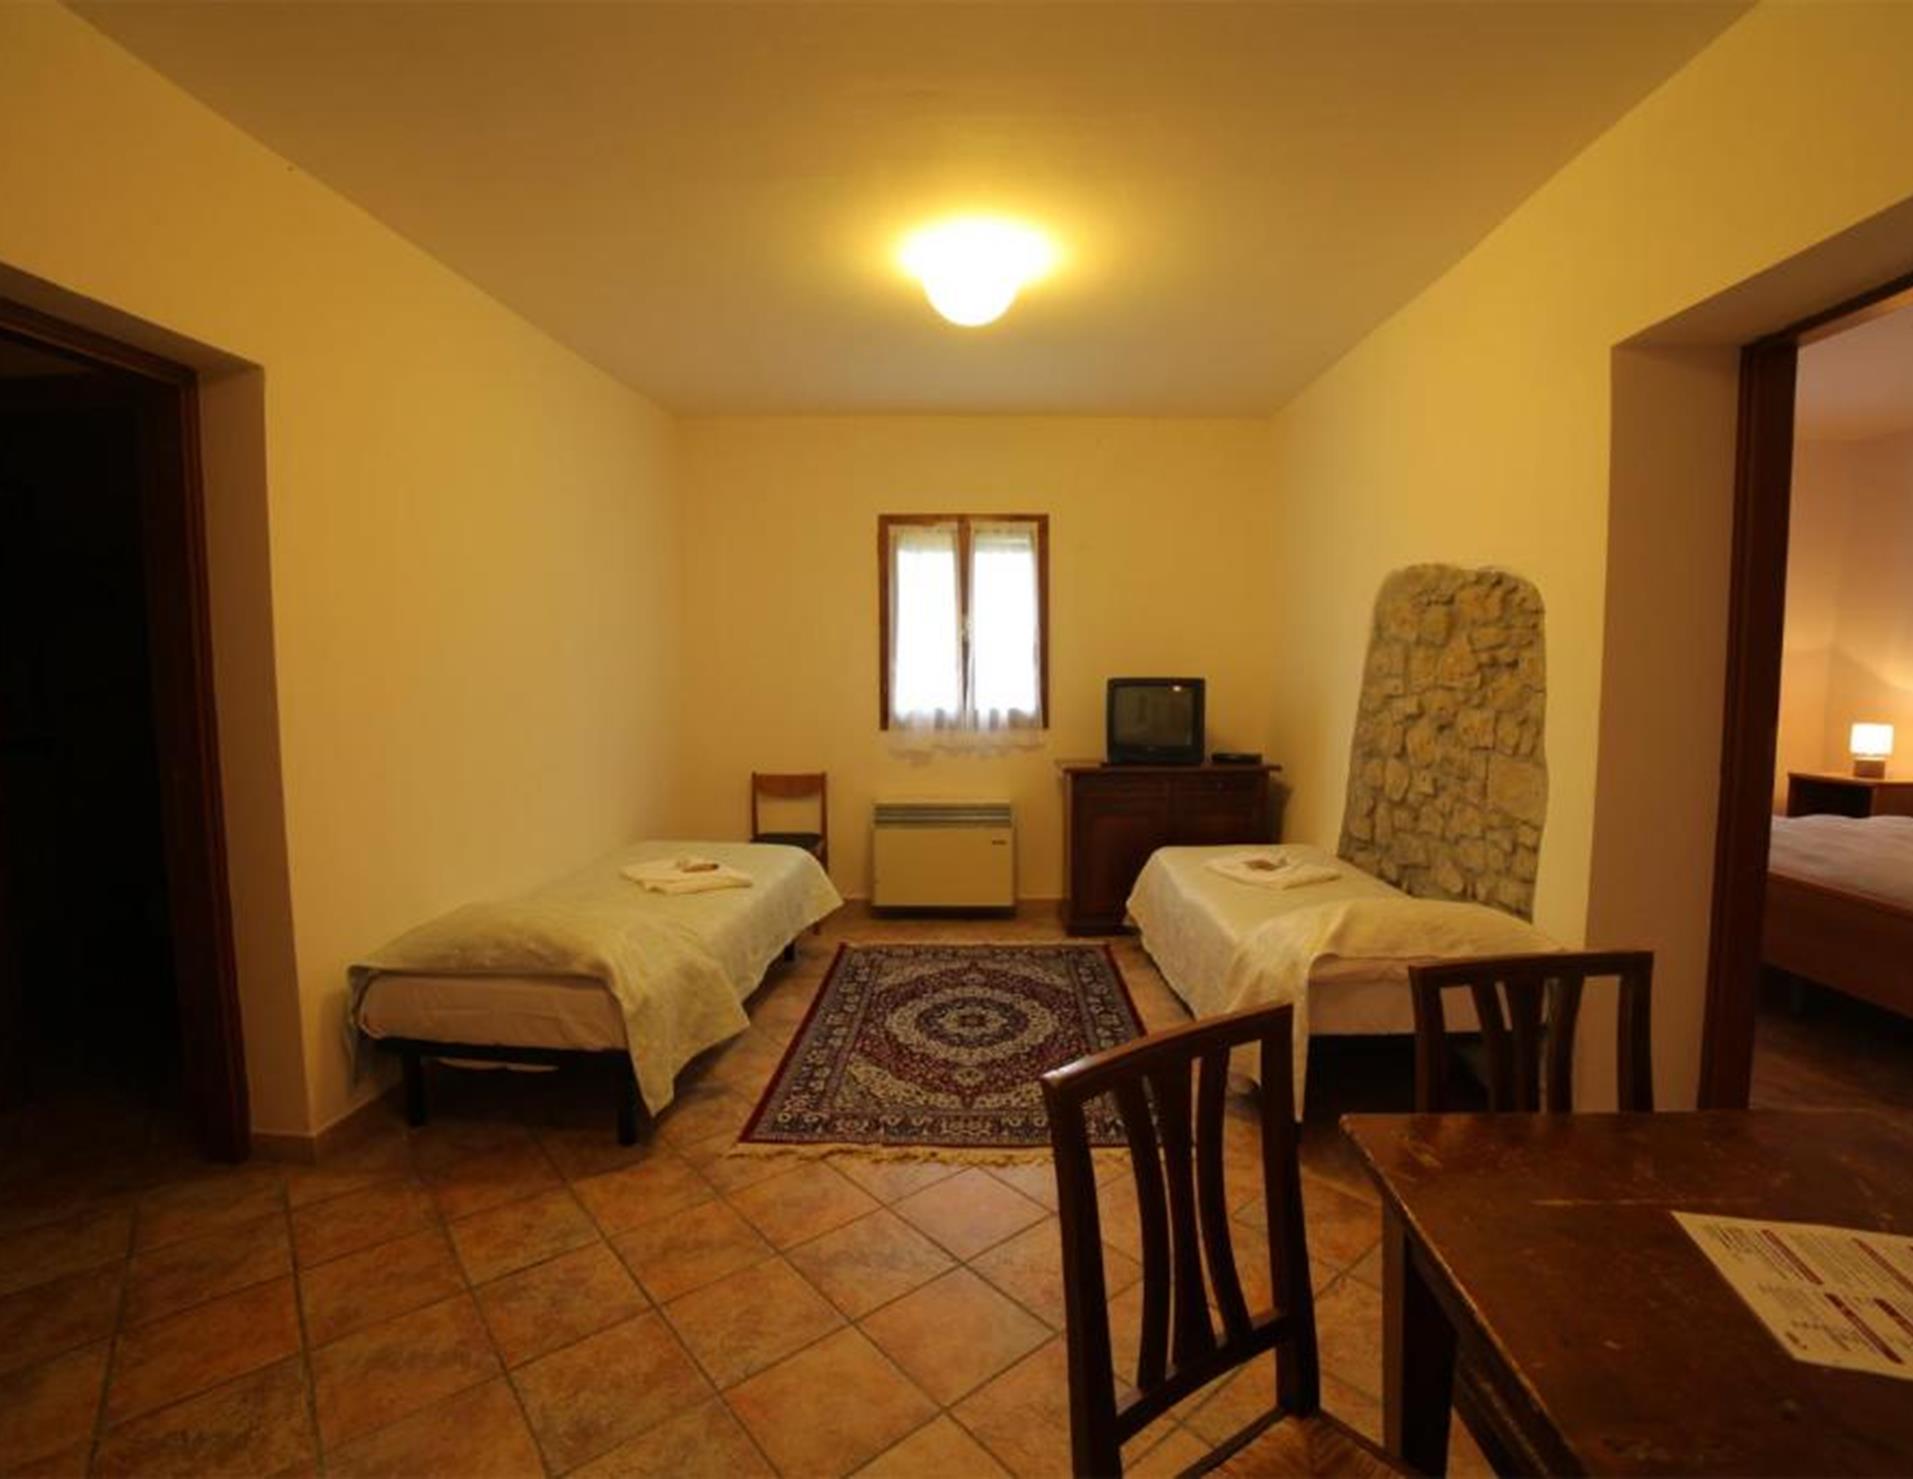 Villaggio Della Salute Piu - Room 7